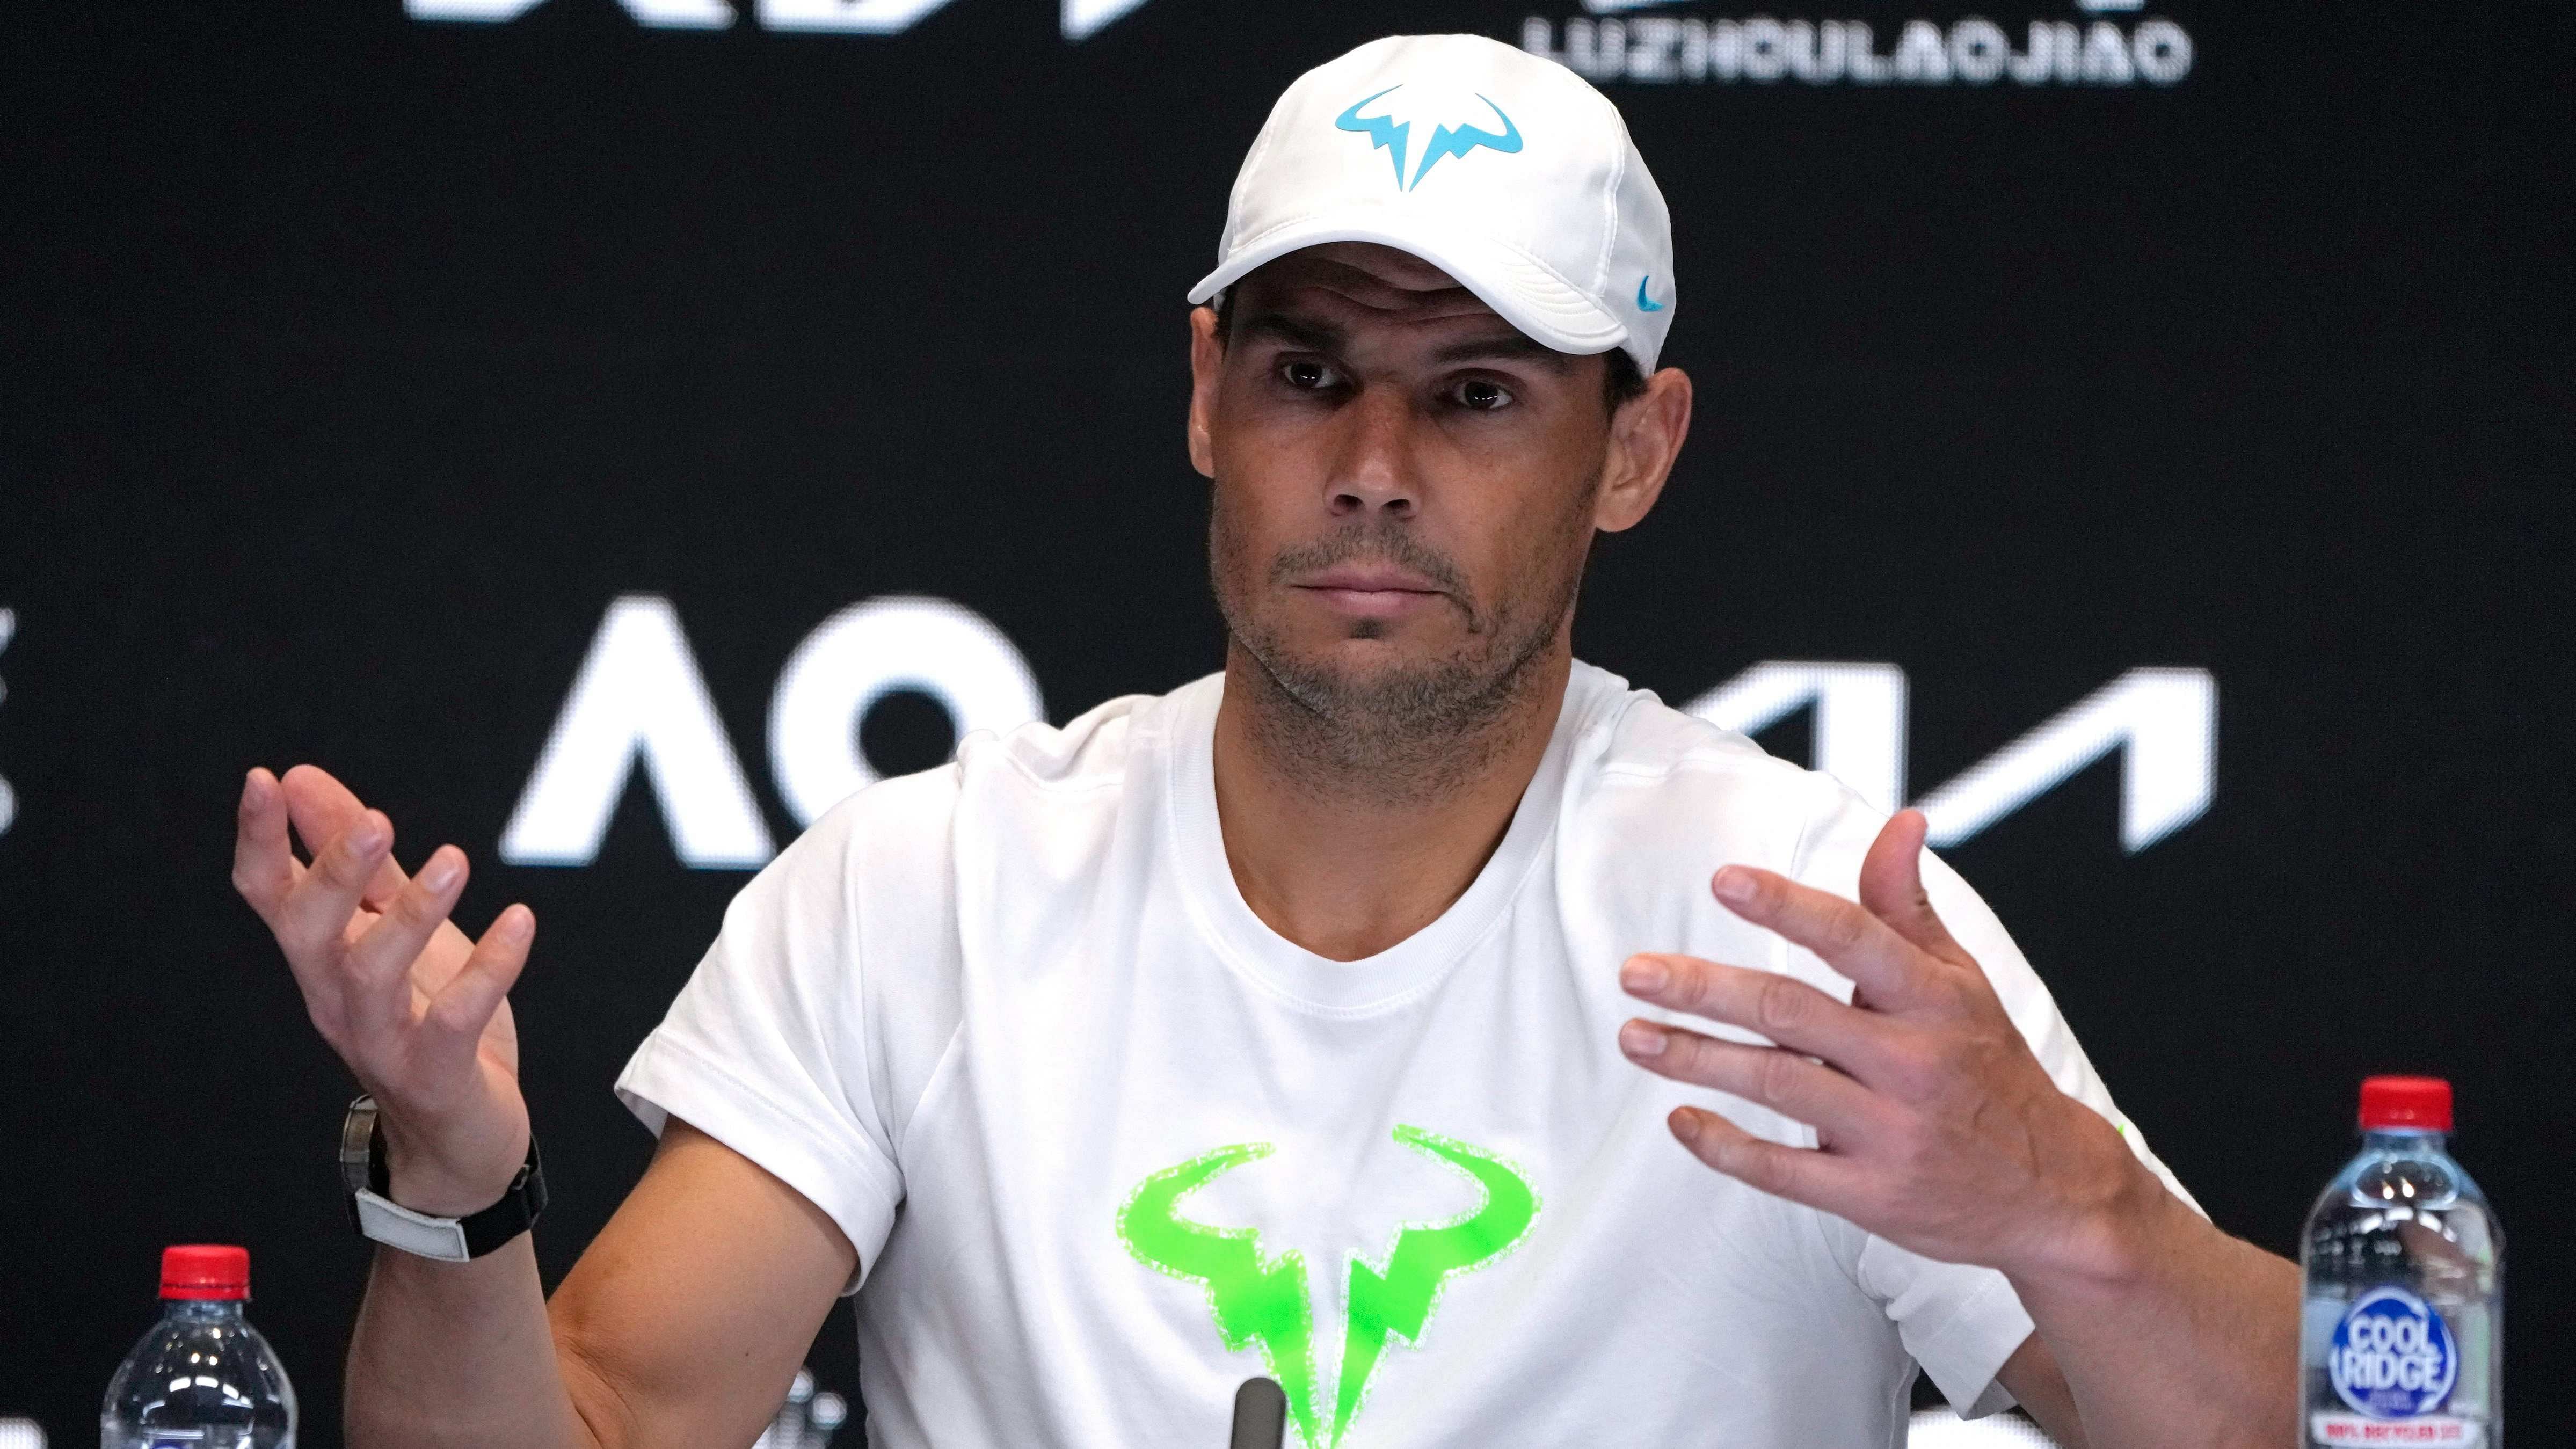 Rafael Nadal. Credit: AP Photo